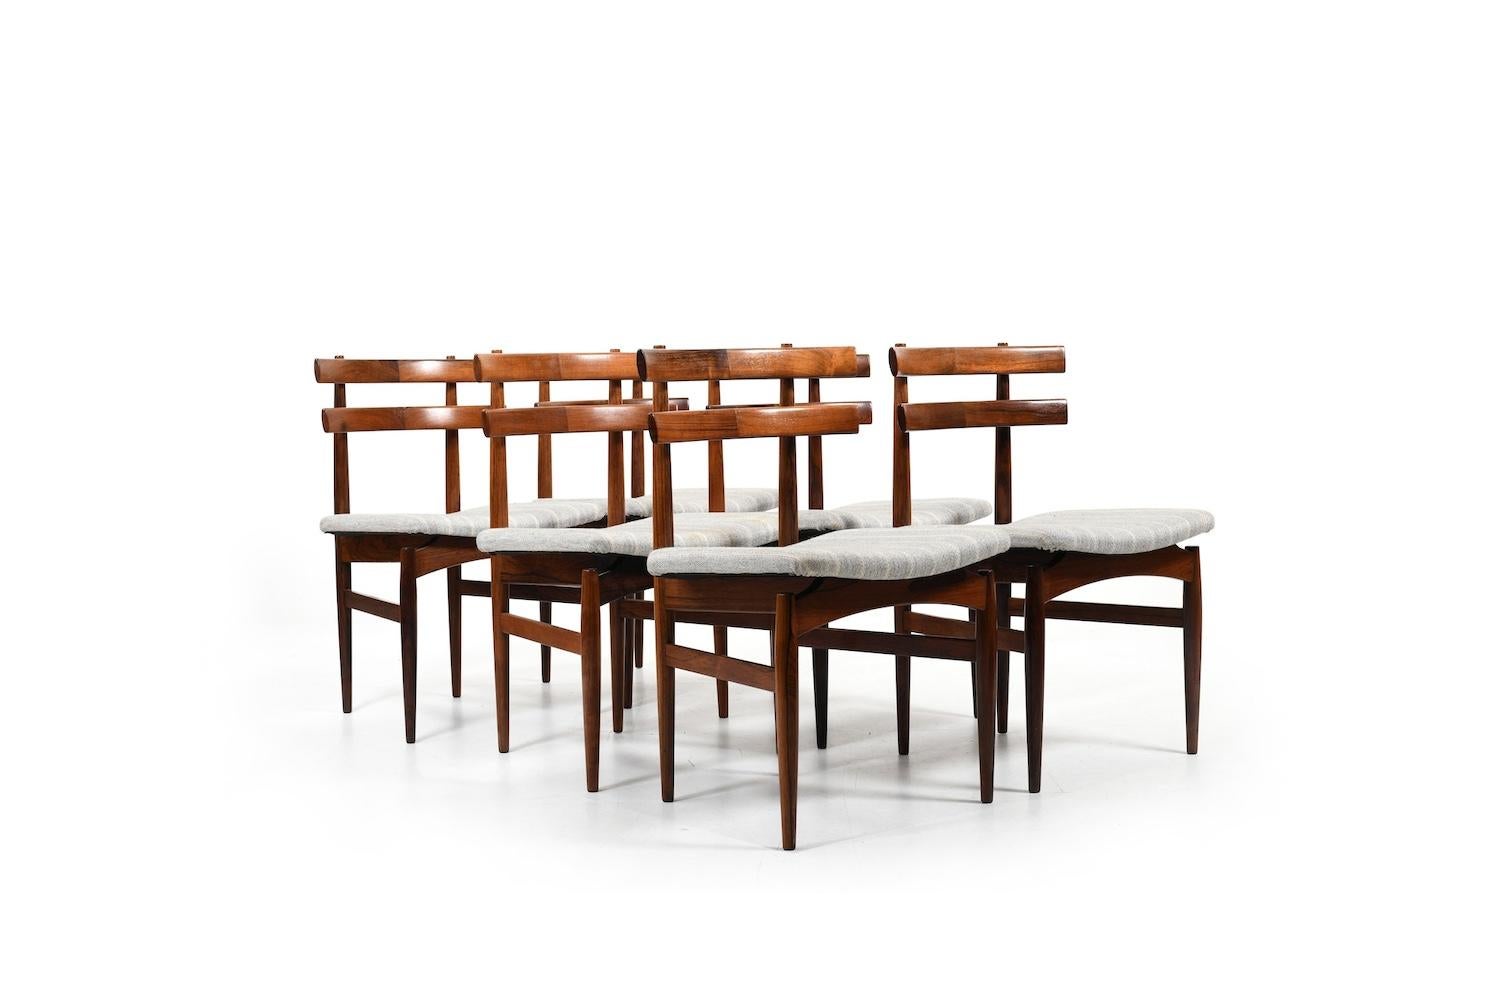 Ensemble de six chaises de salle à manger, modèle n° 30 par Poul Hundevad pour Hundevad & Co. 1960. Fabriqué en bois noble. Tissu à rayures grises/crème. Demandez-nous et nous nous ferons un plaisir de retapisser les sièges pour vous.